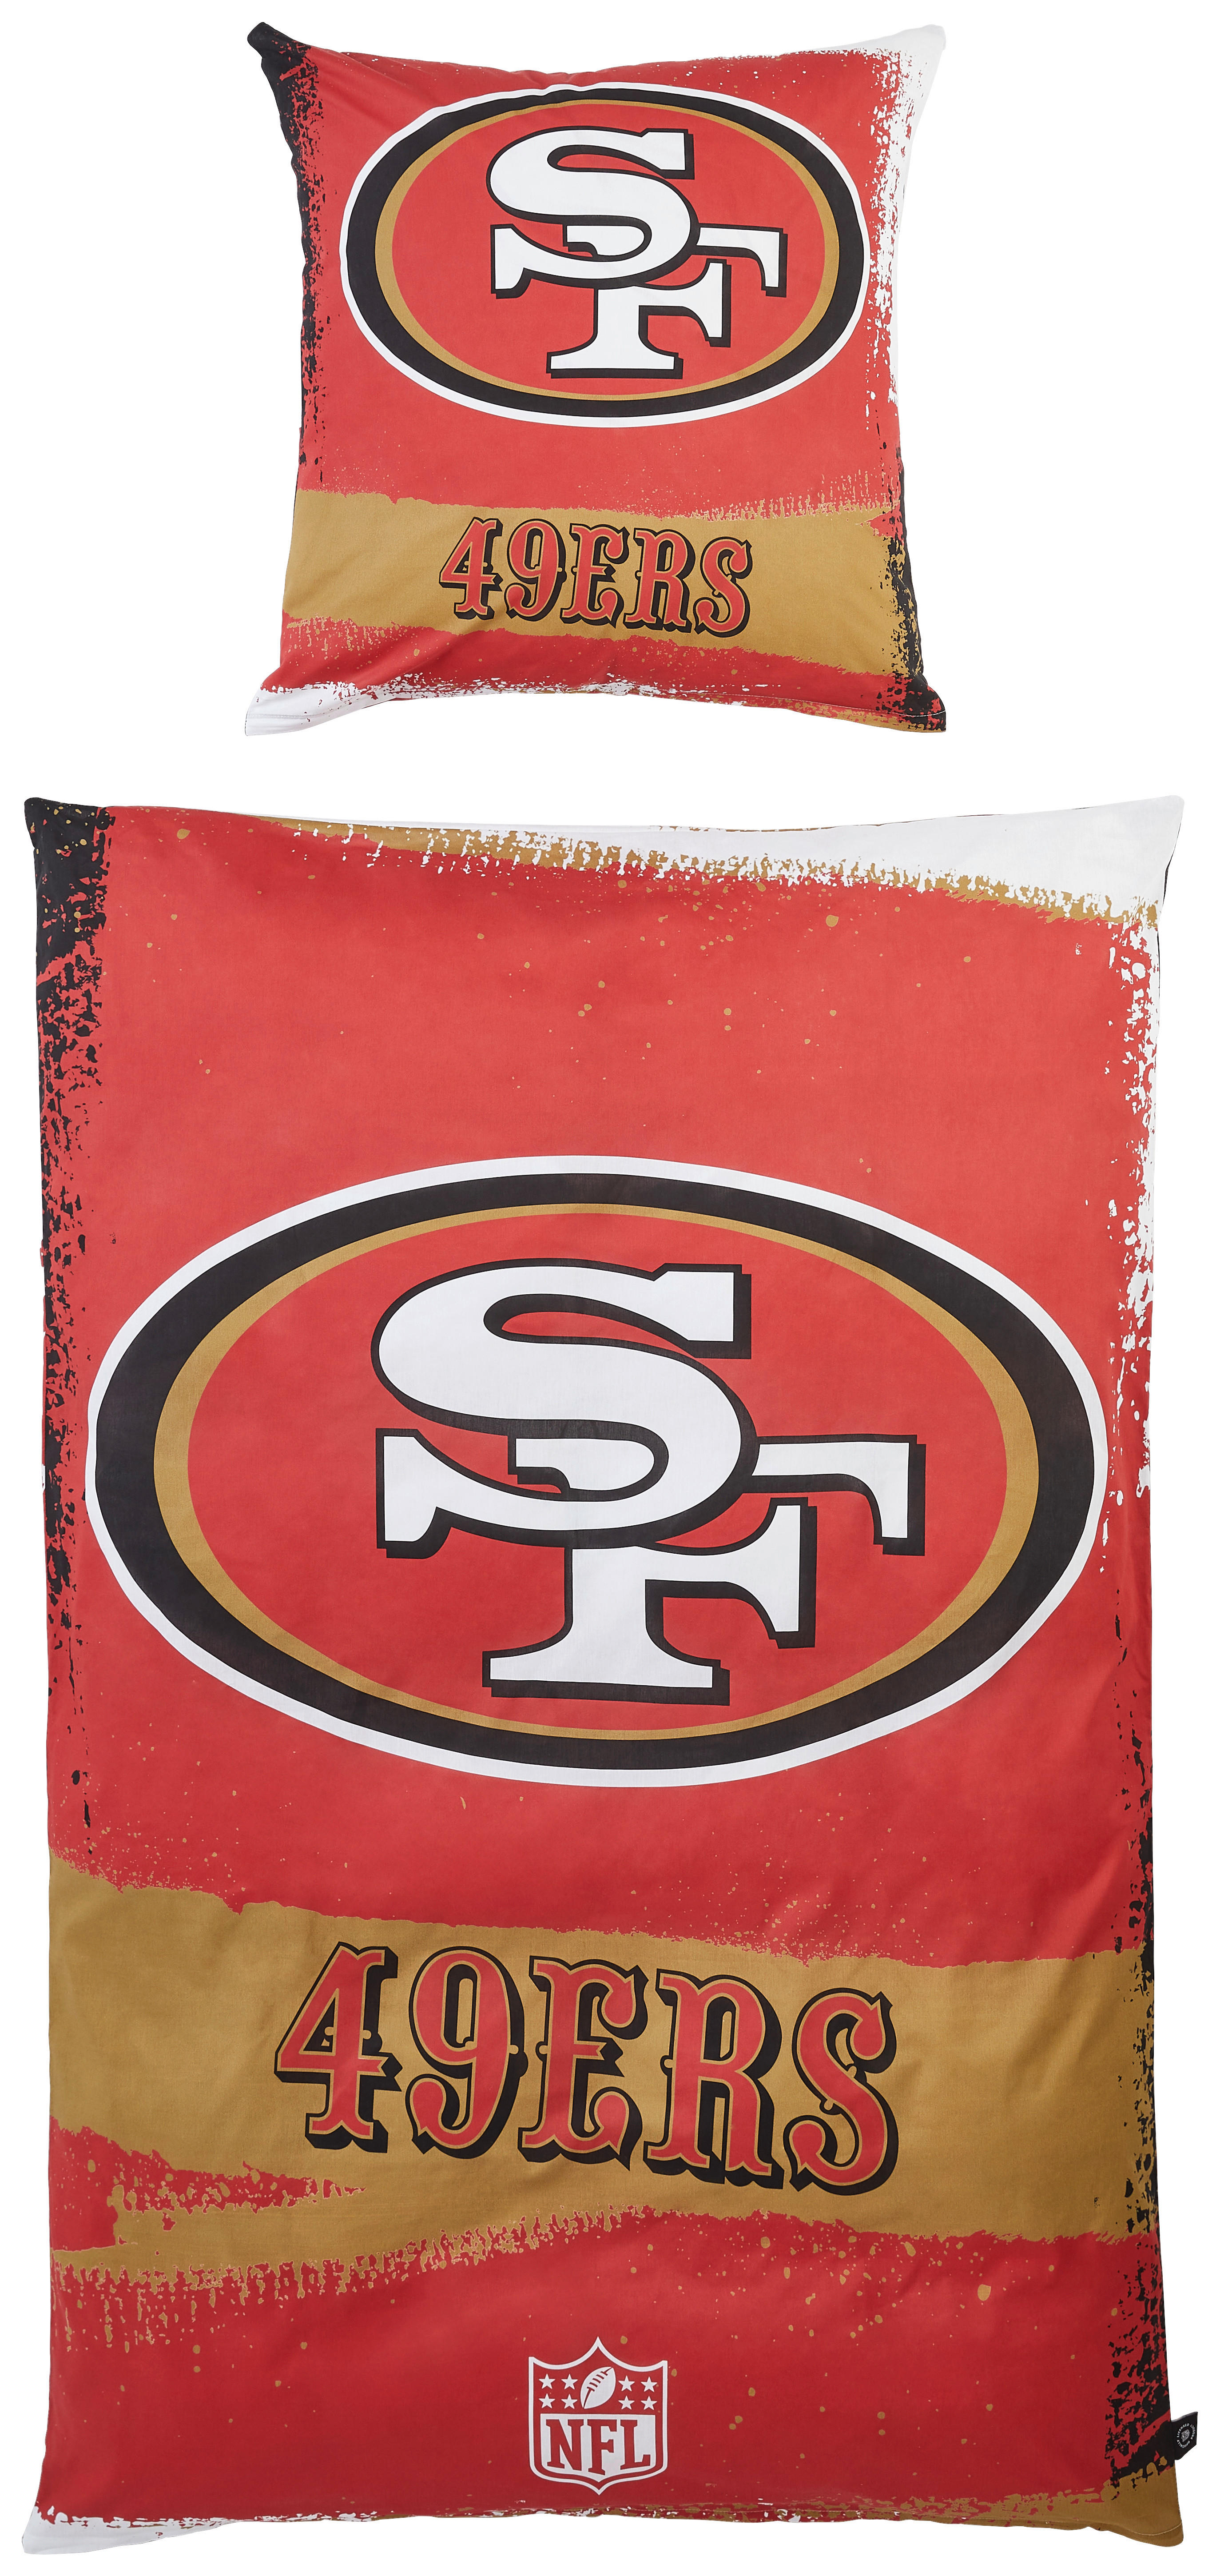 BETTWÄSCHE NFL San Francisco 49ers Renforcé  - Gelb/Rot, LIFESTYLE, Textil (135/200cm)